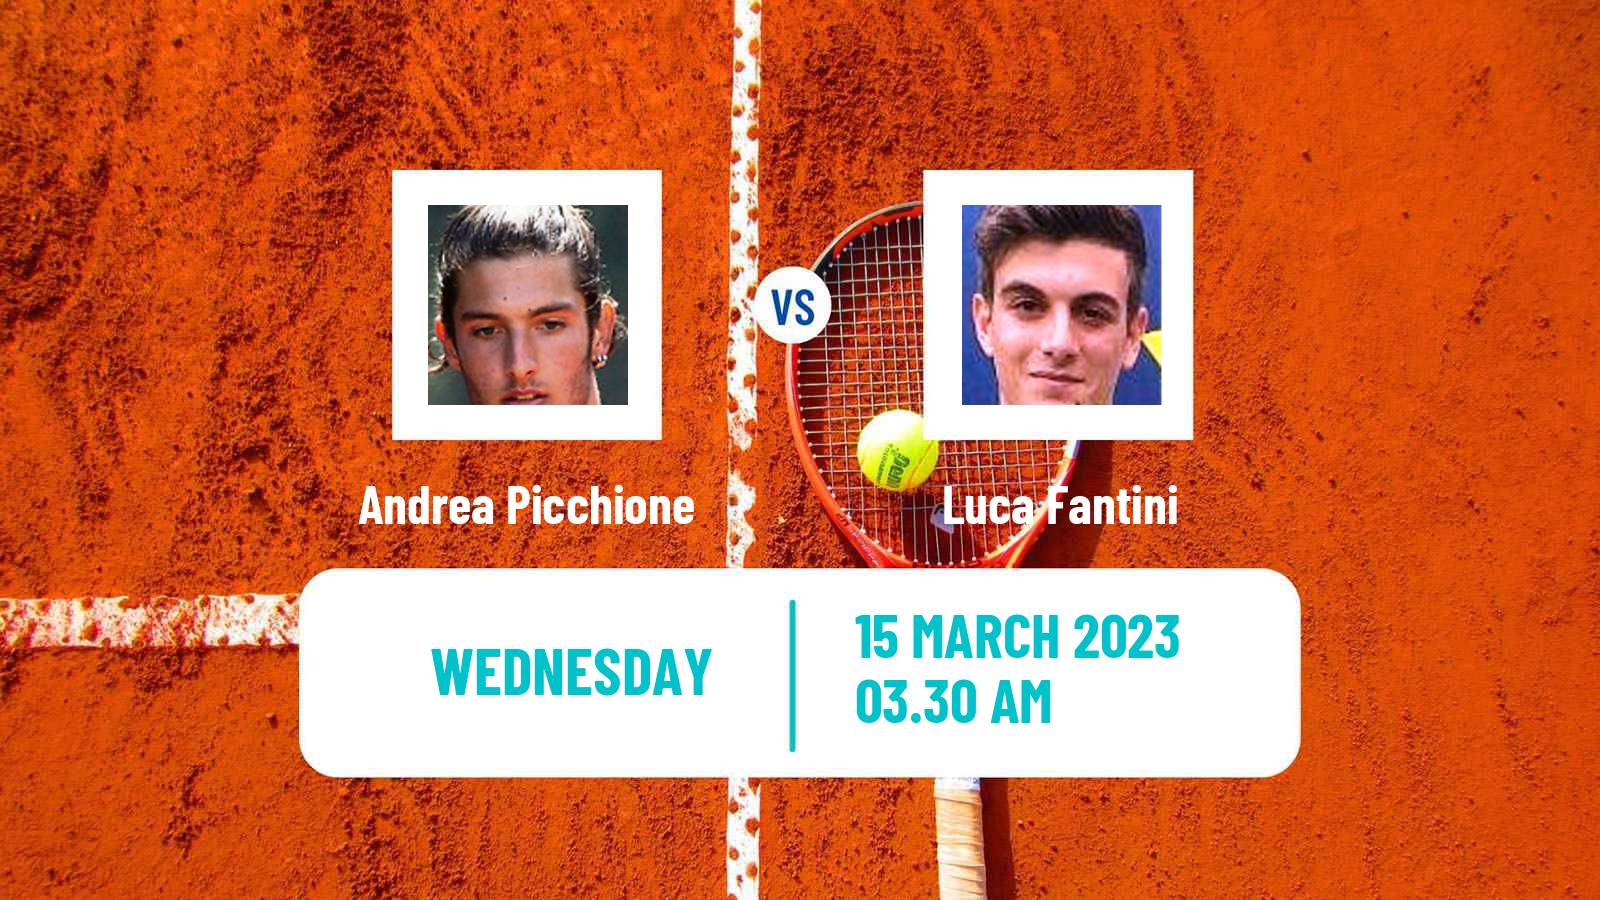 Tennis ITF Tournaments Andrea Picchione - Luca Fantini